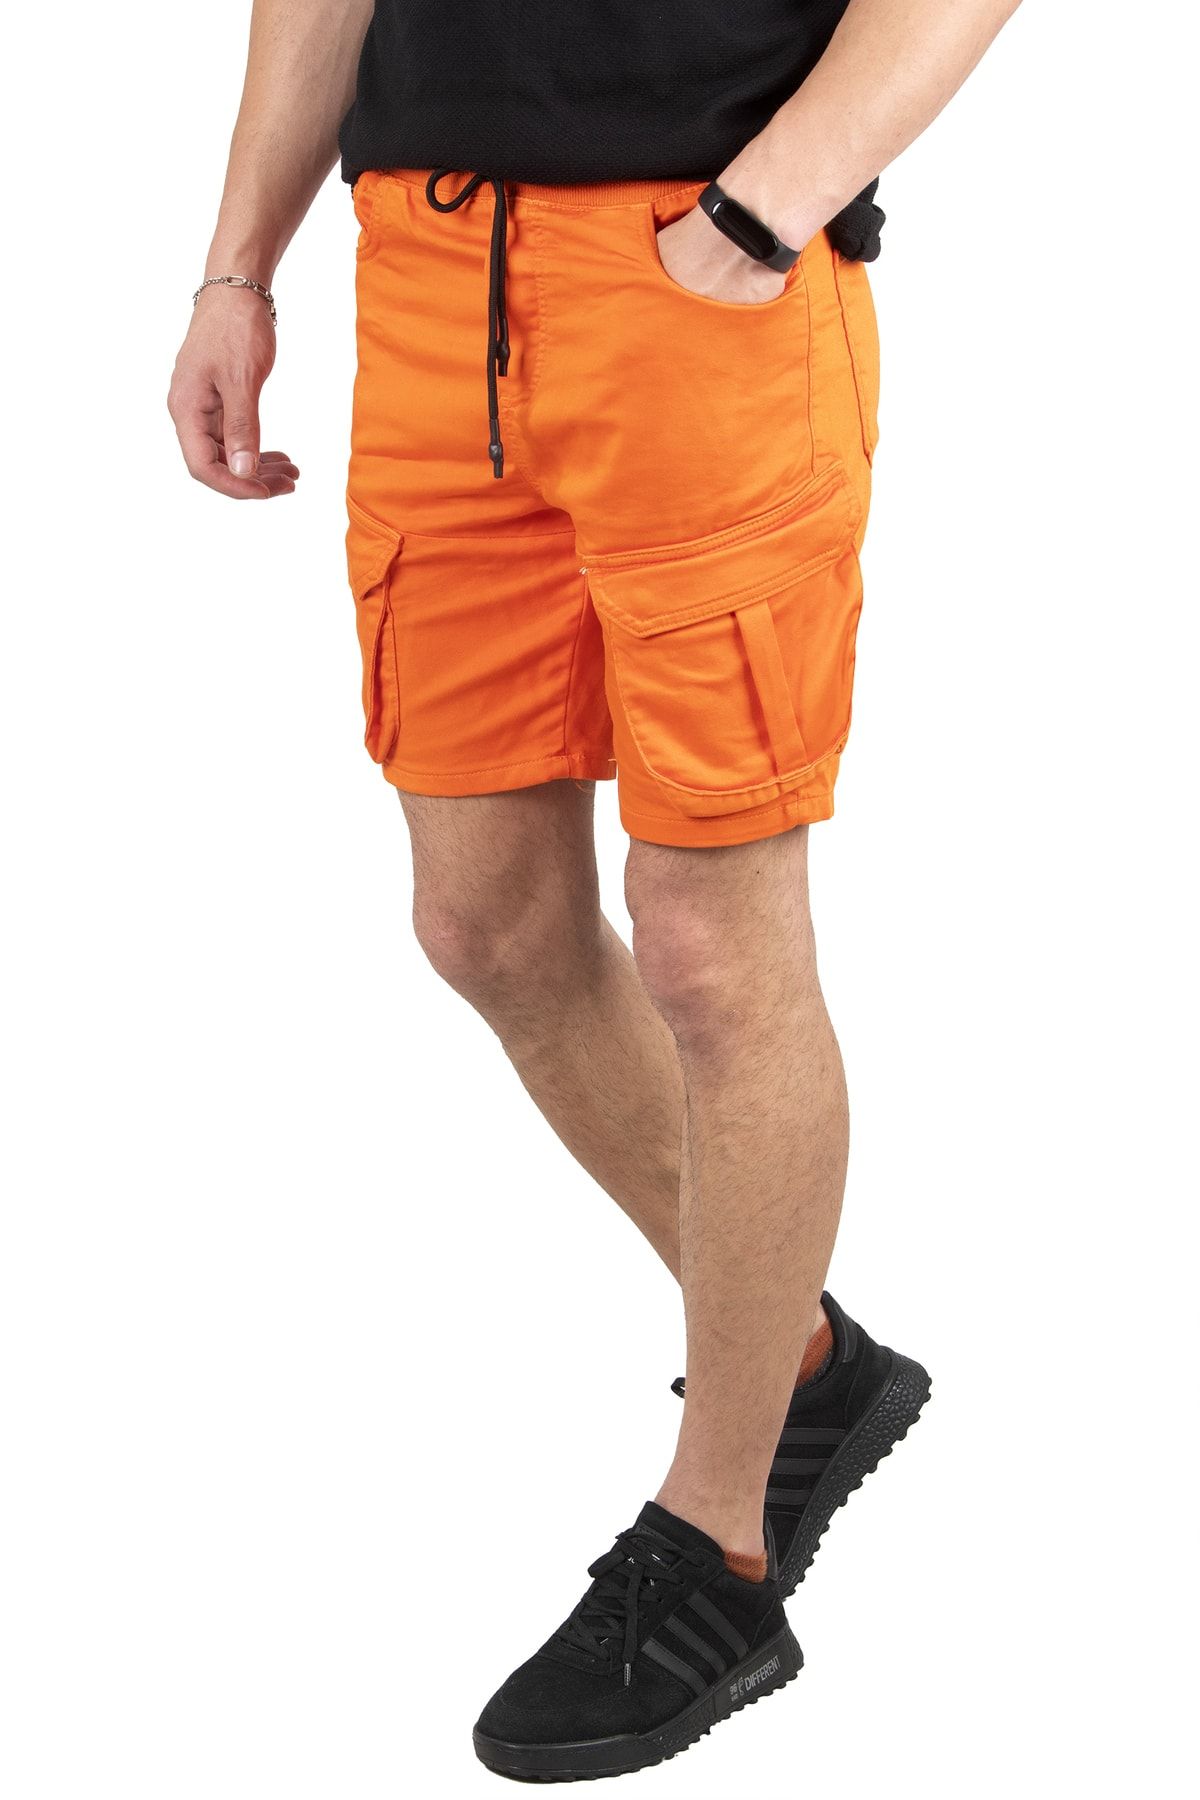 DeepSea Erkek Orange Beli Lastikli Bağcıklı Kargo Cepli Erkek Örme Şort 2210012